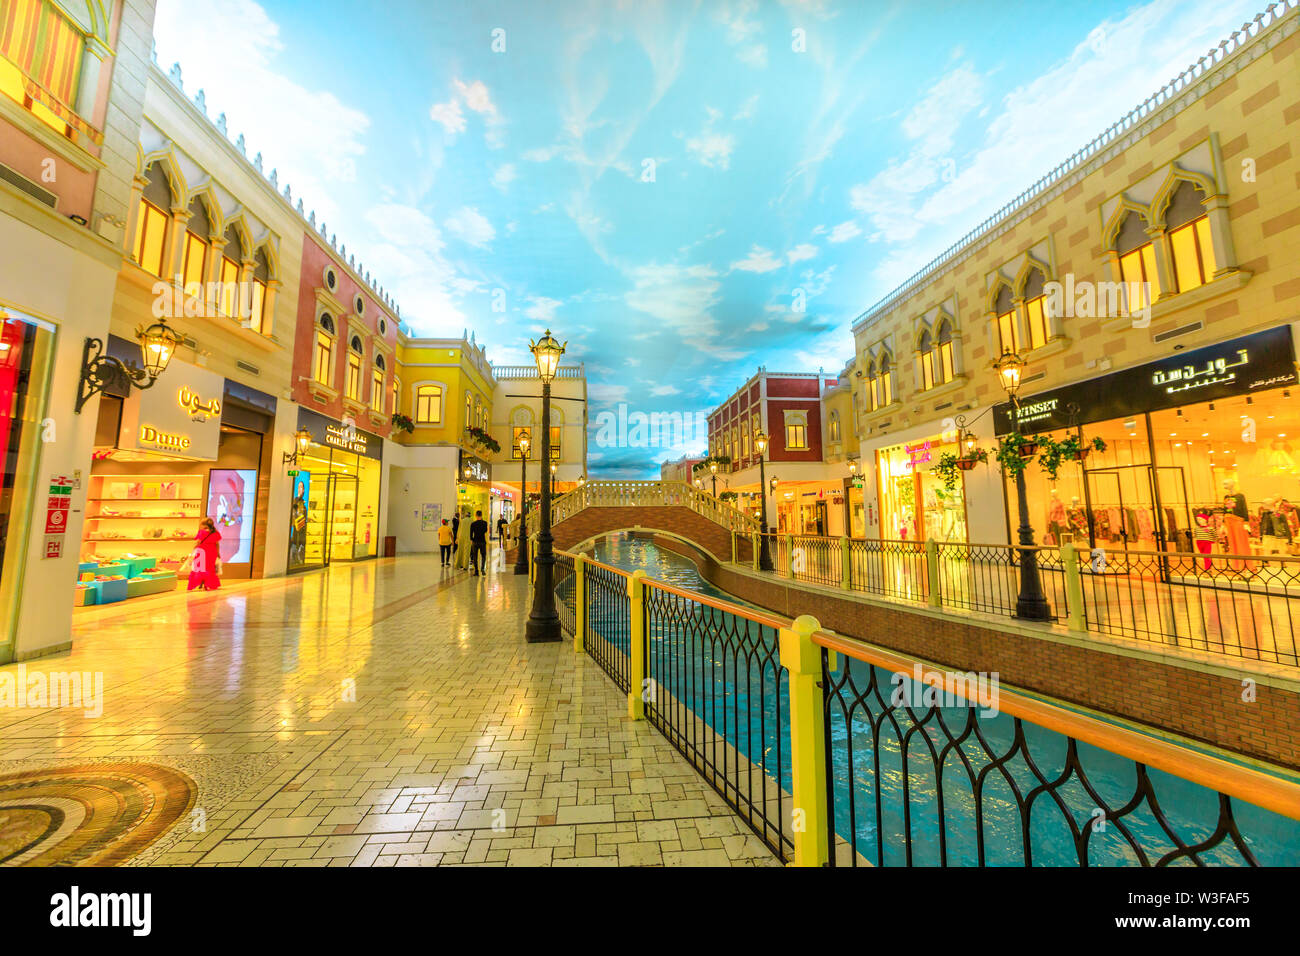 Doha, Qatar - 21 Febbraio 2019: venezia canal nel Villaggio Mall, il centro commerciale nella zona di aspirano. Marchi di lusso, negozi costosi e negozi esclusivi Foto Stock